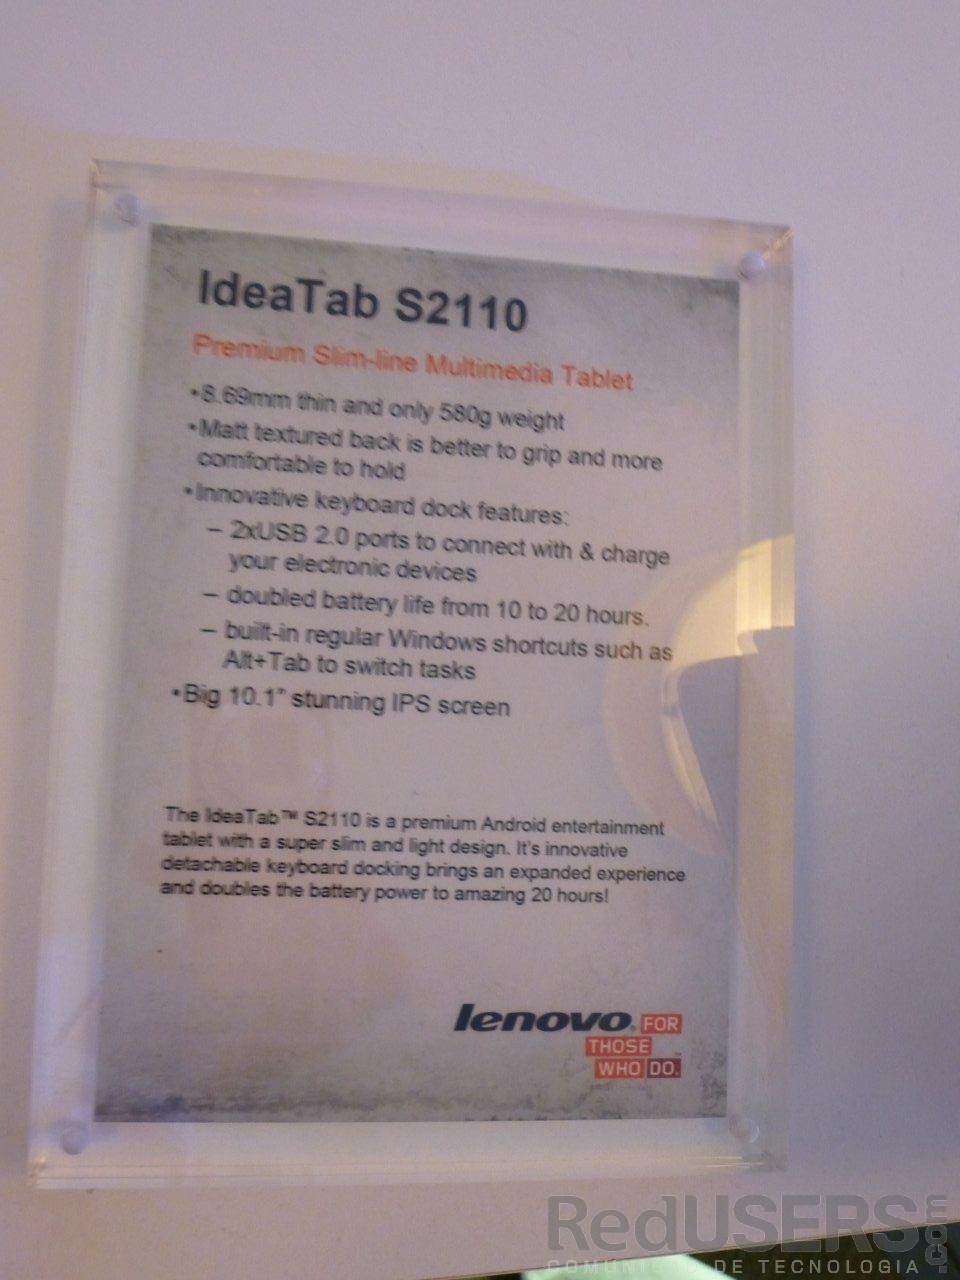 Las specs de la IdeaTab S2110, otra de las tablets Android de Lenovo